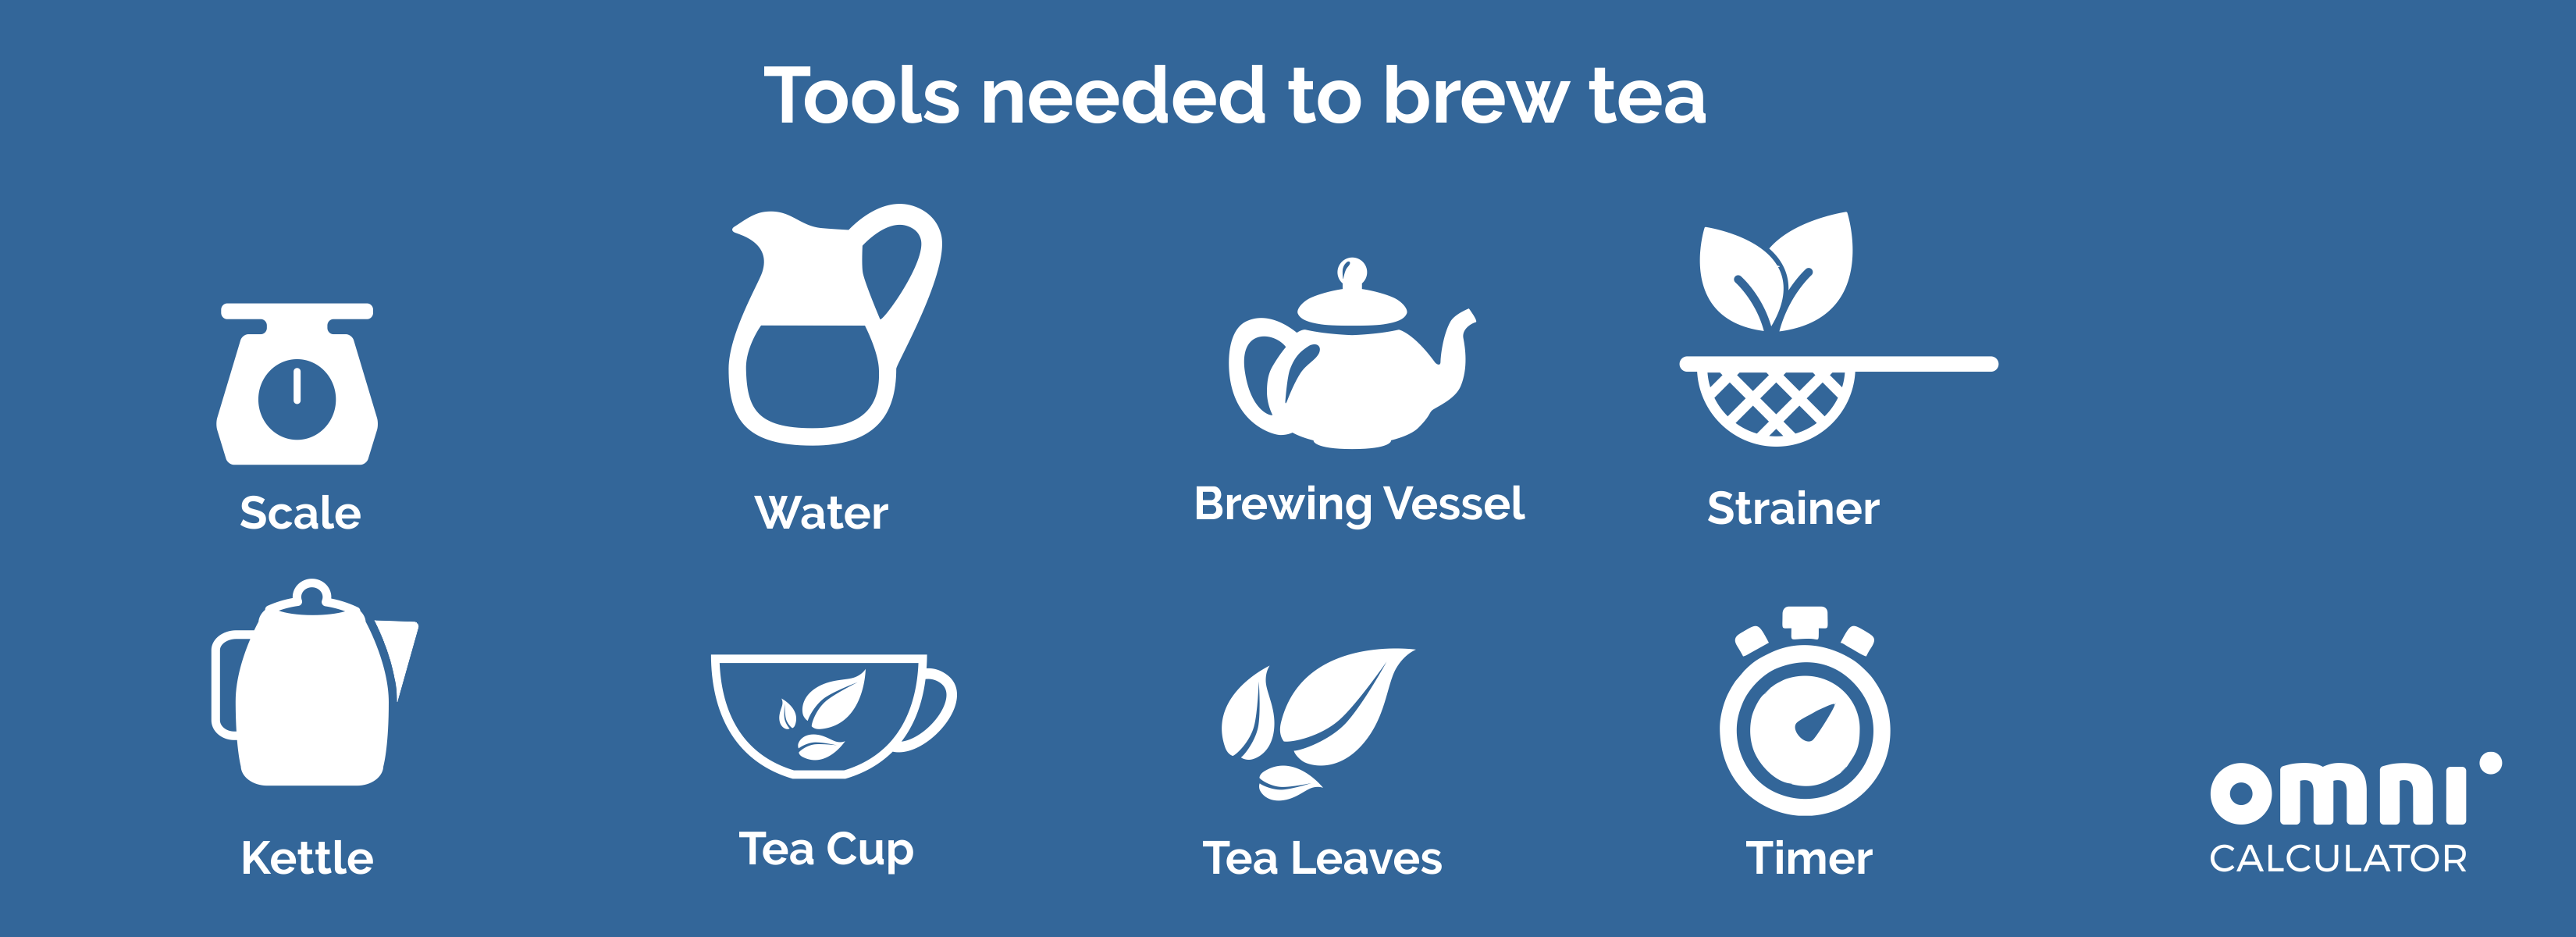 Tools needed to brew tea